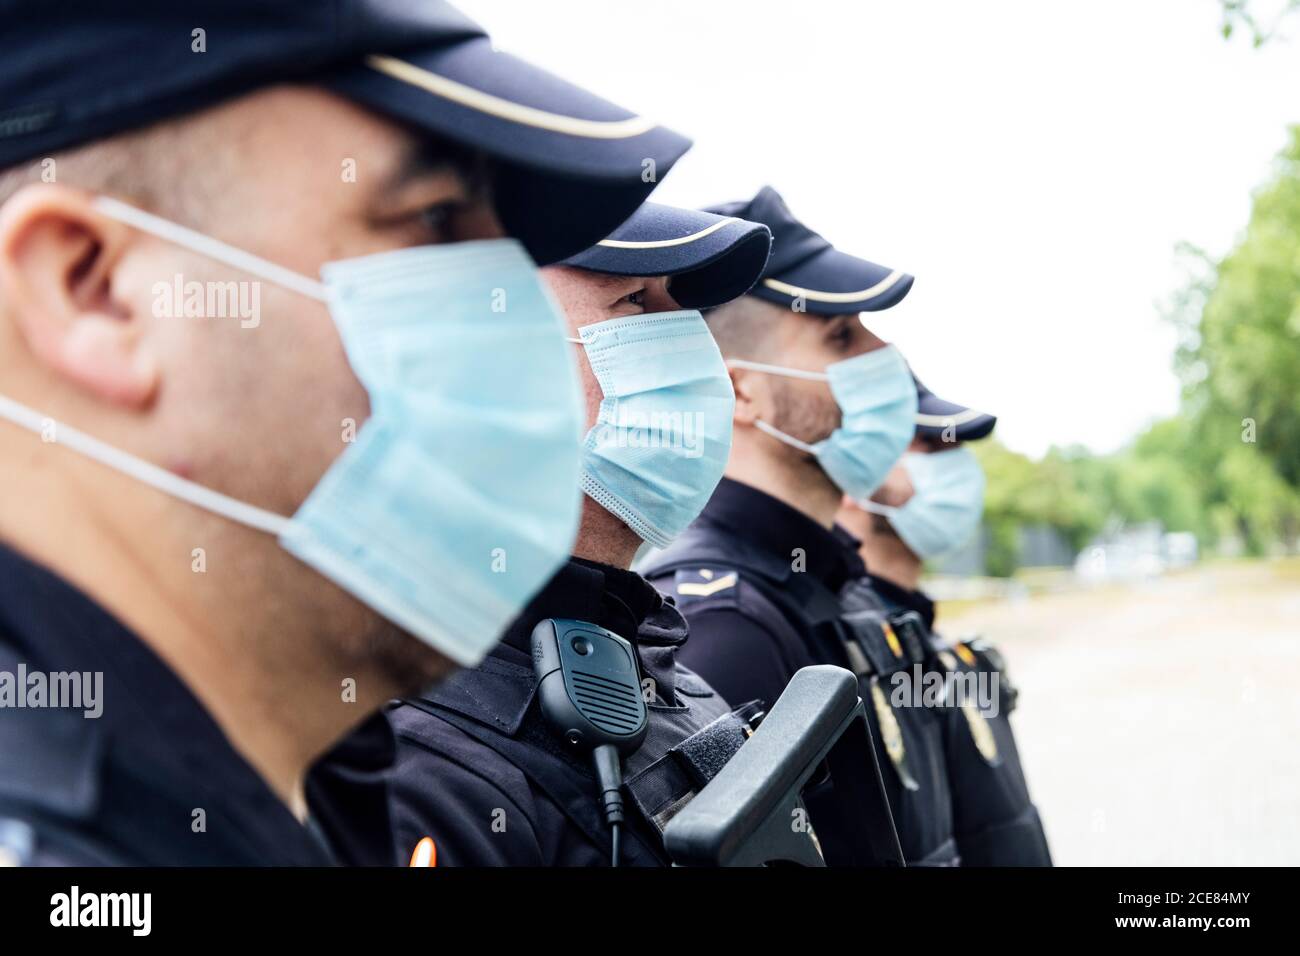 Escuadrón de cuerpo entero de oficiales de policía españoles en artes de protección con armas que llevan máscaras médicas durante las patrullas callejeras Foto de stock